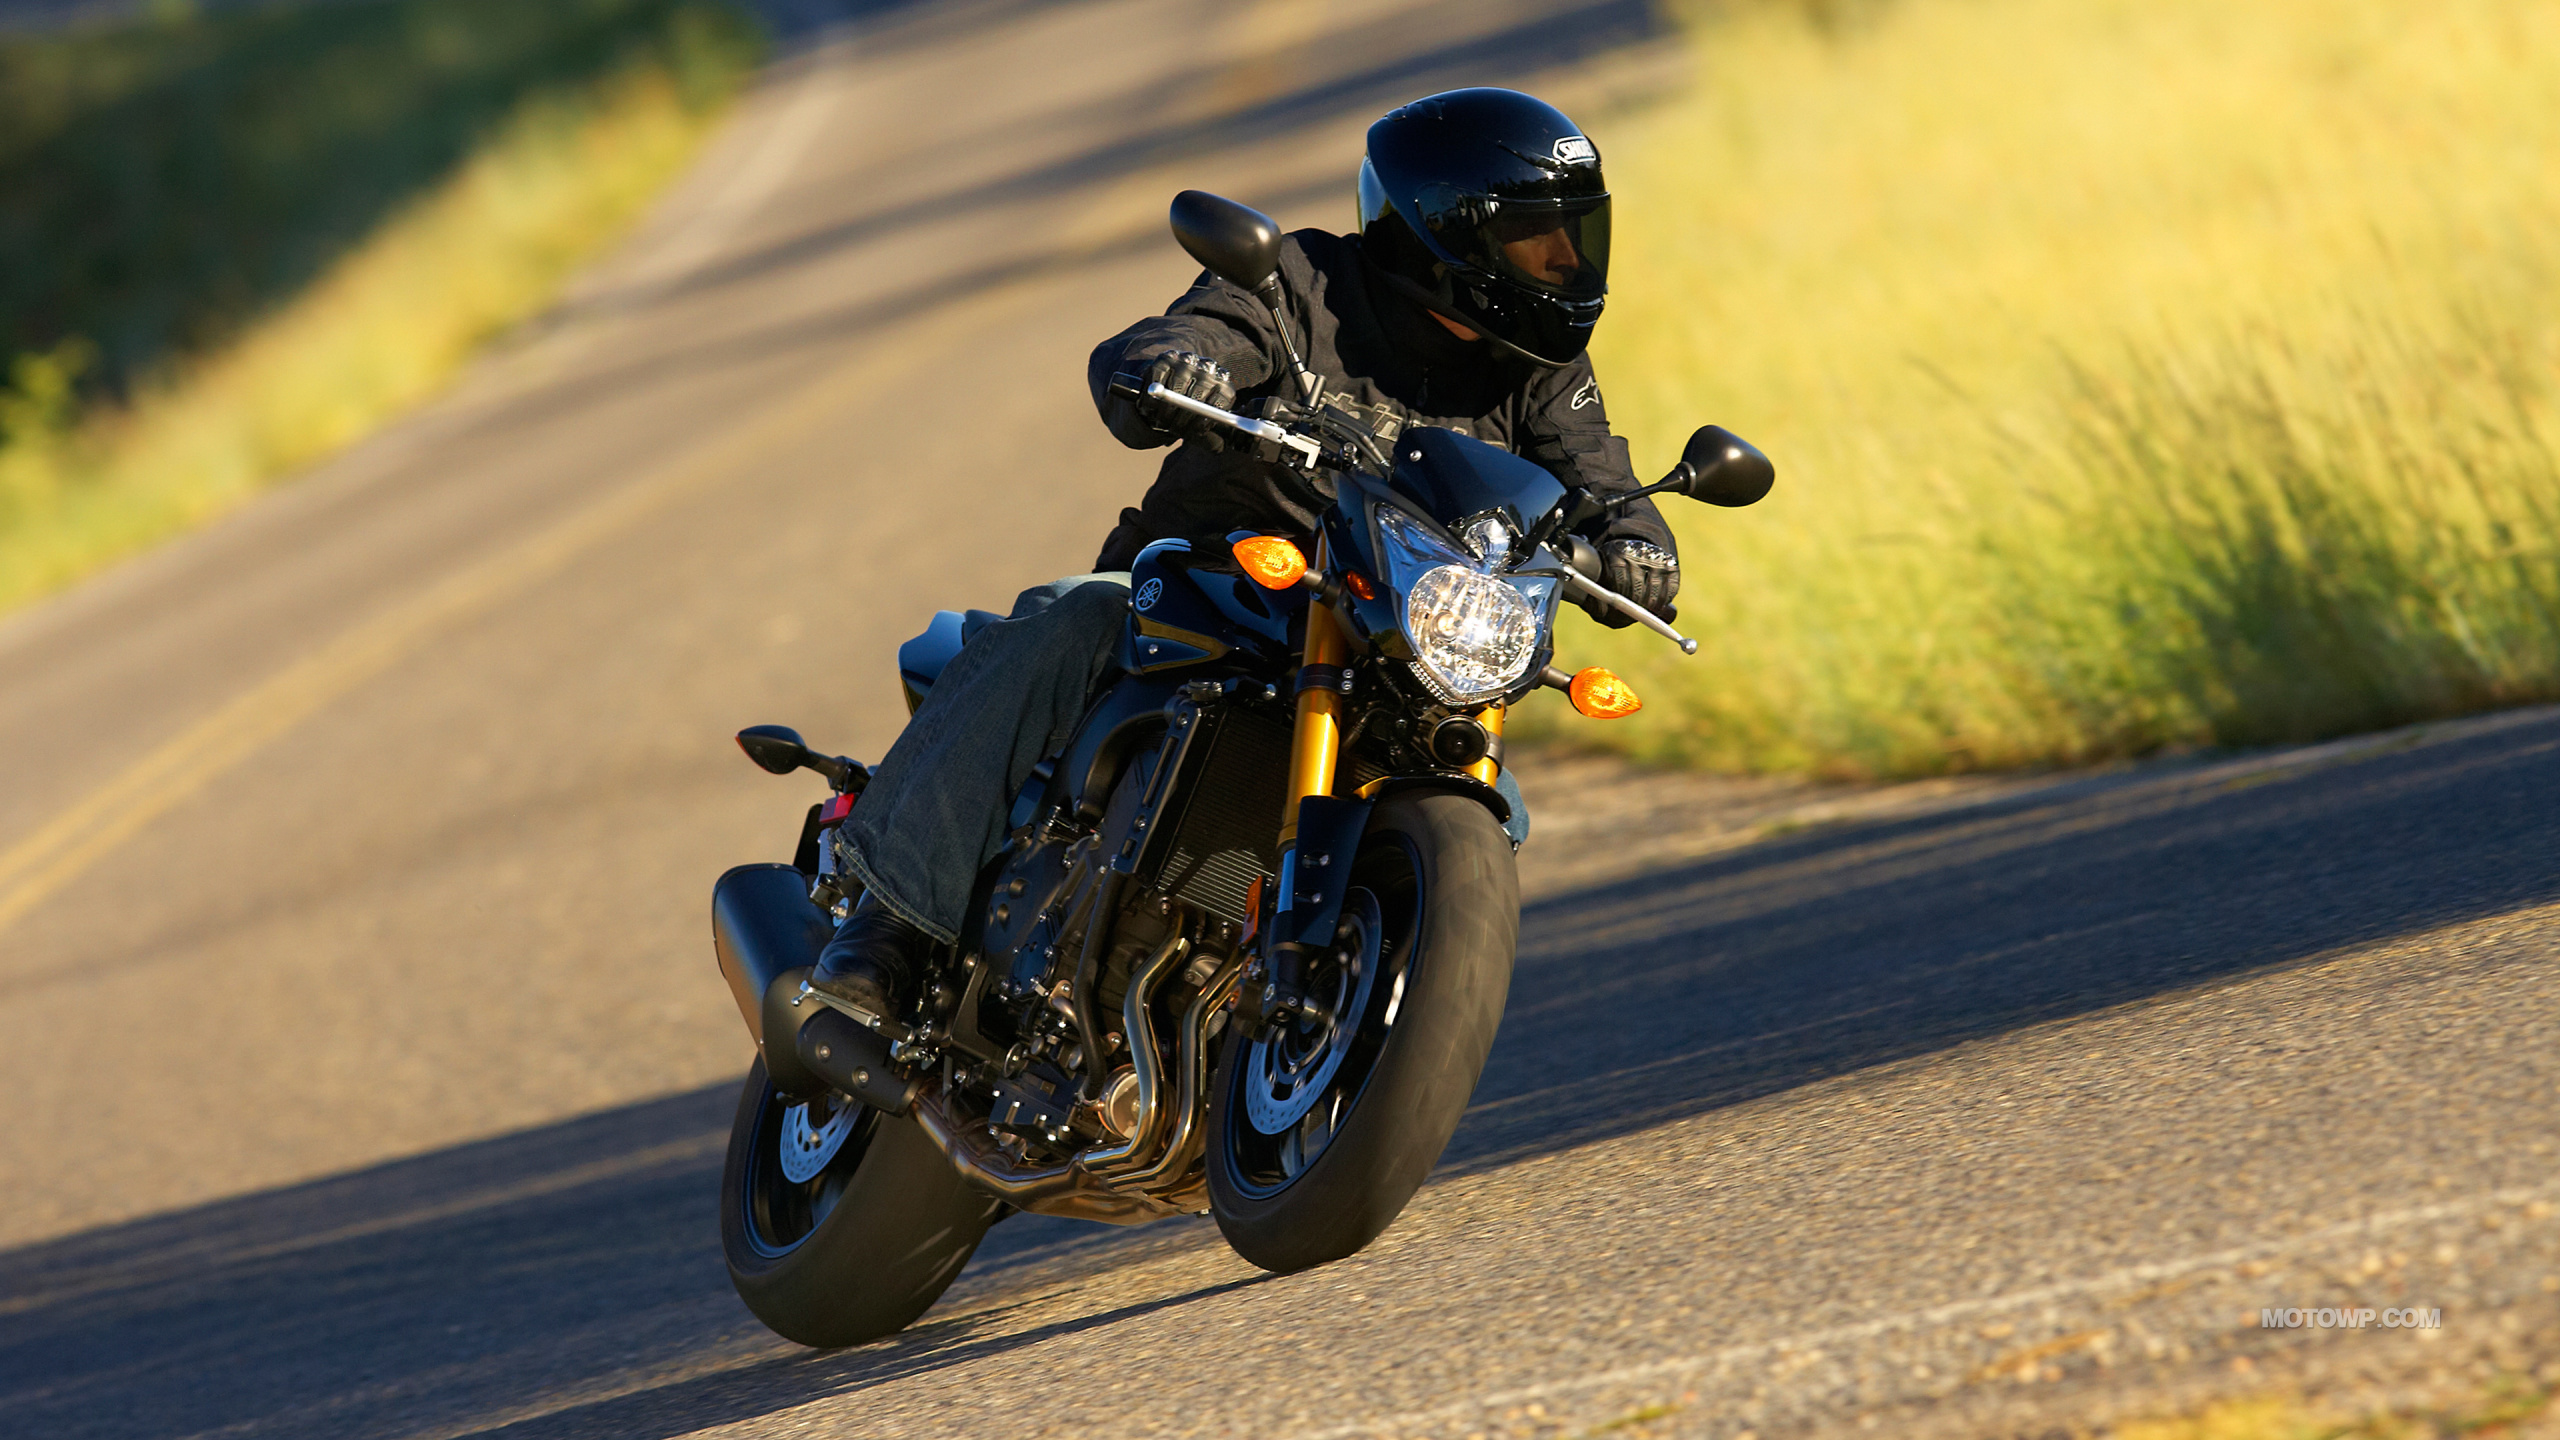 Hombre de Chaqueta Negra Montando en Motocicleta Negra en la Carretera Durante el Día. Wallpaper in 2560x1440 Resolution